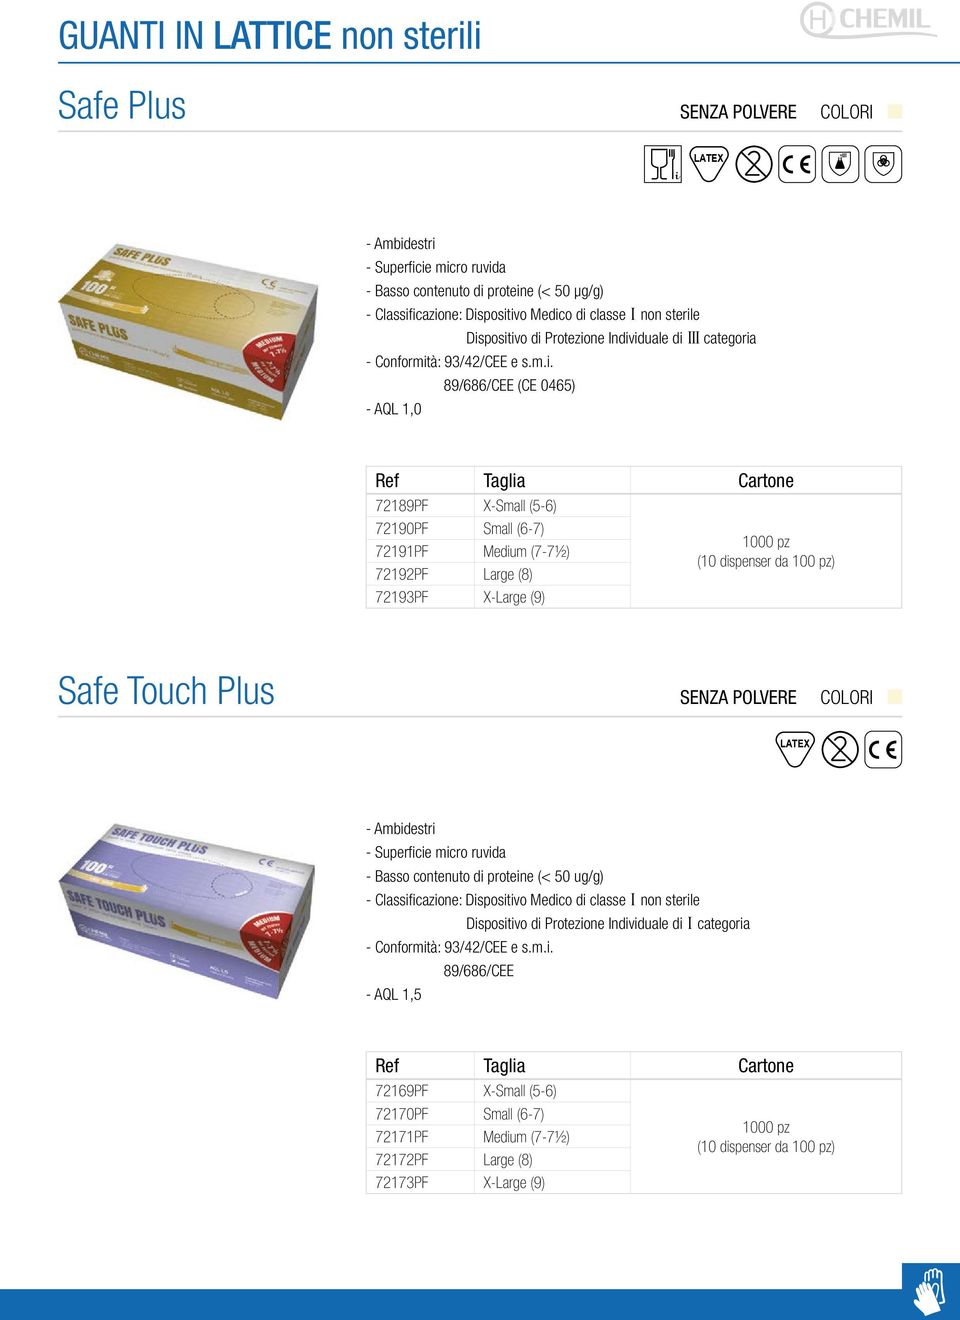 dispenser da 100 pz) Safe Touch Plus LATEX - Superficie micro ruvida - Basso contenuto di proteine (< 50 ug/g) Dispositivo di Protezione Individuale di I